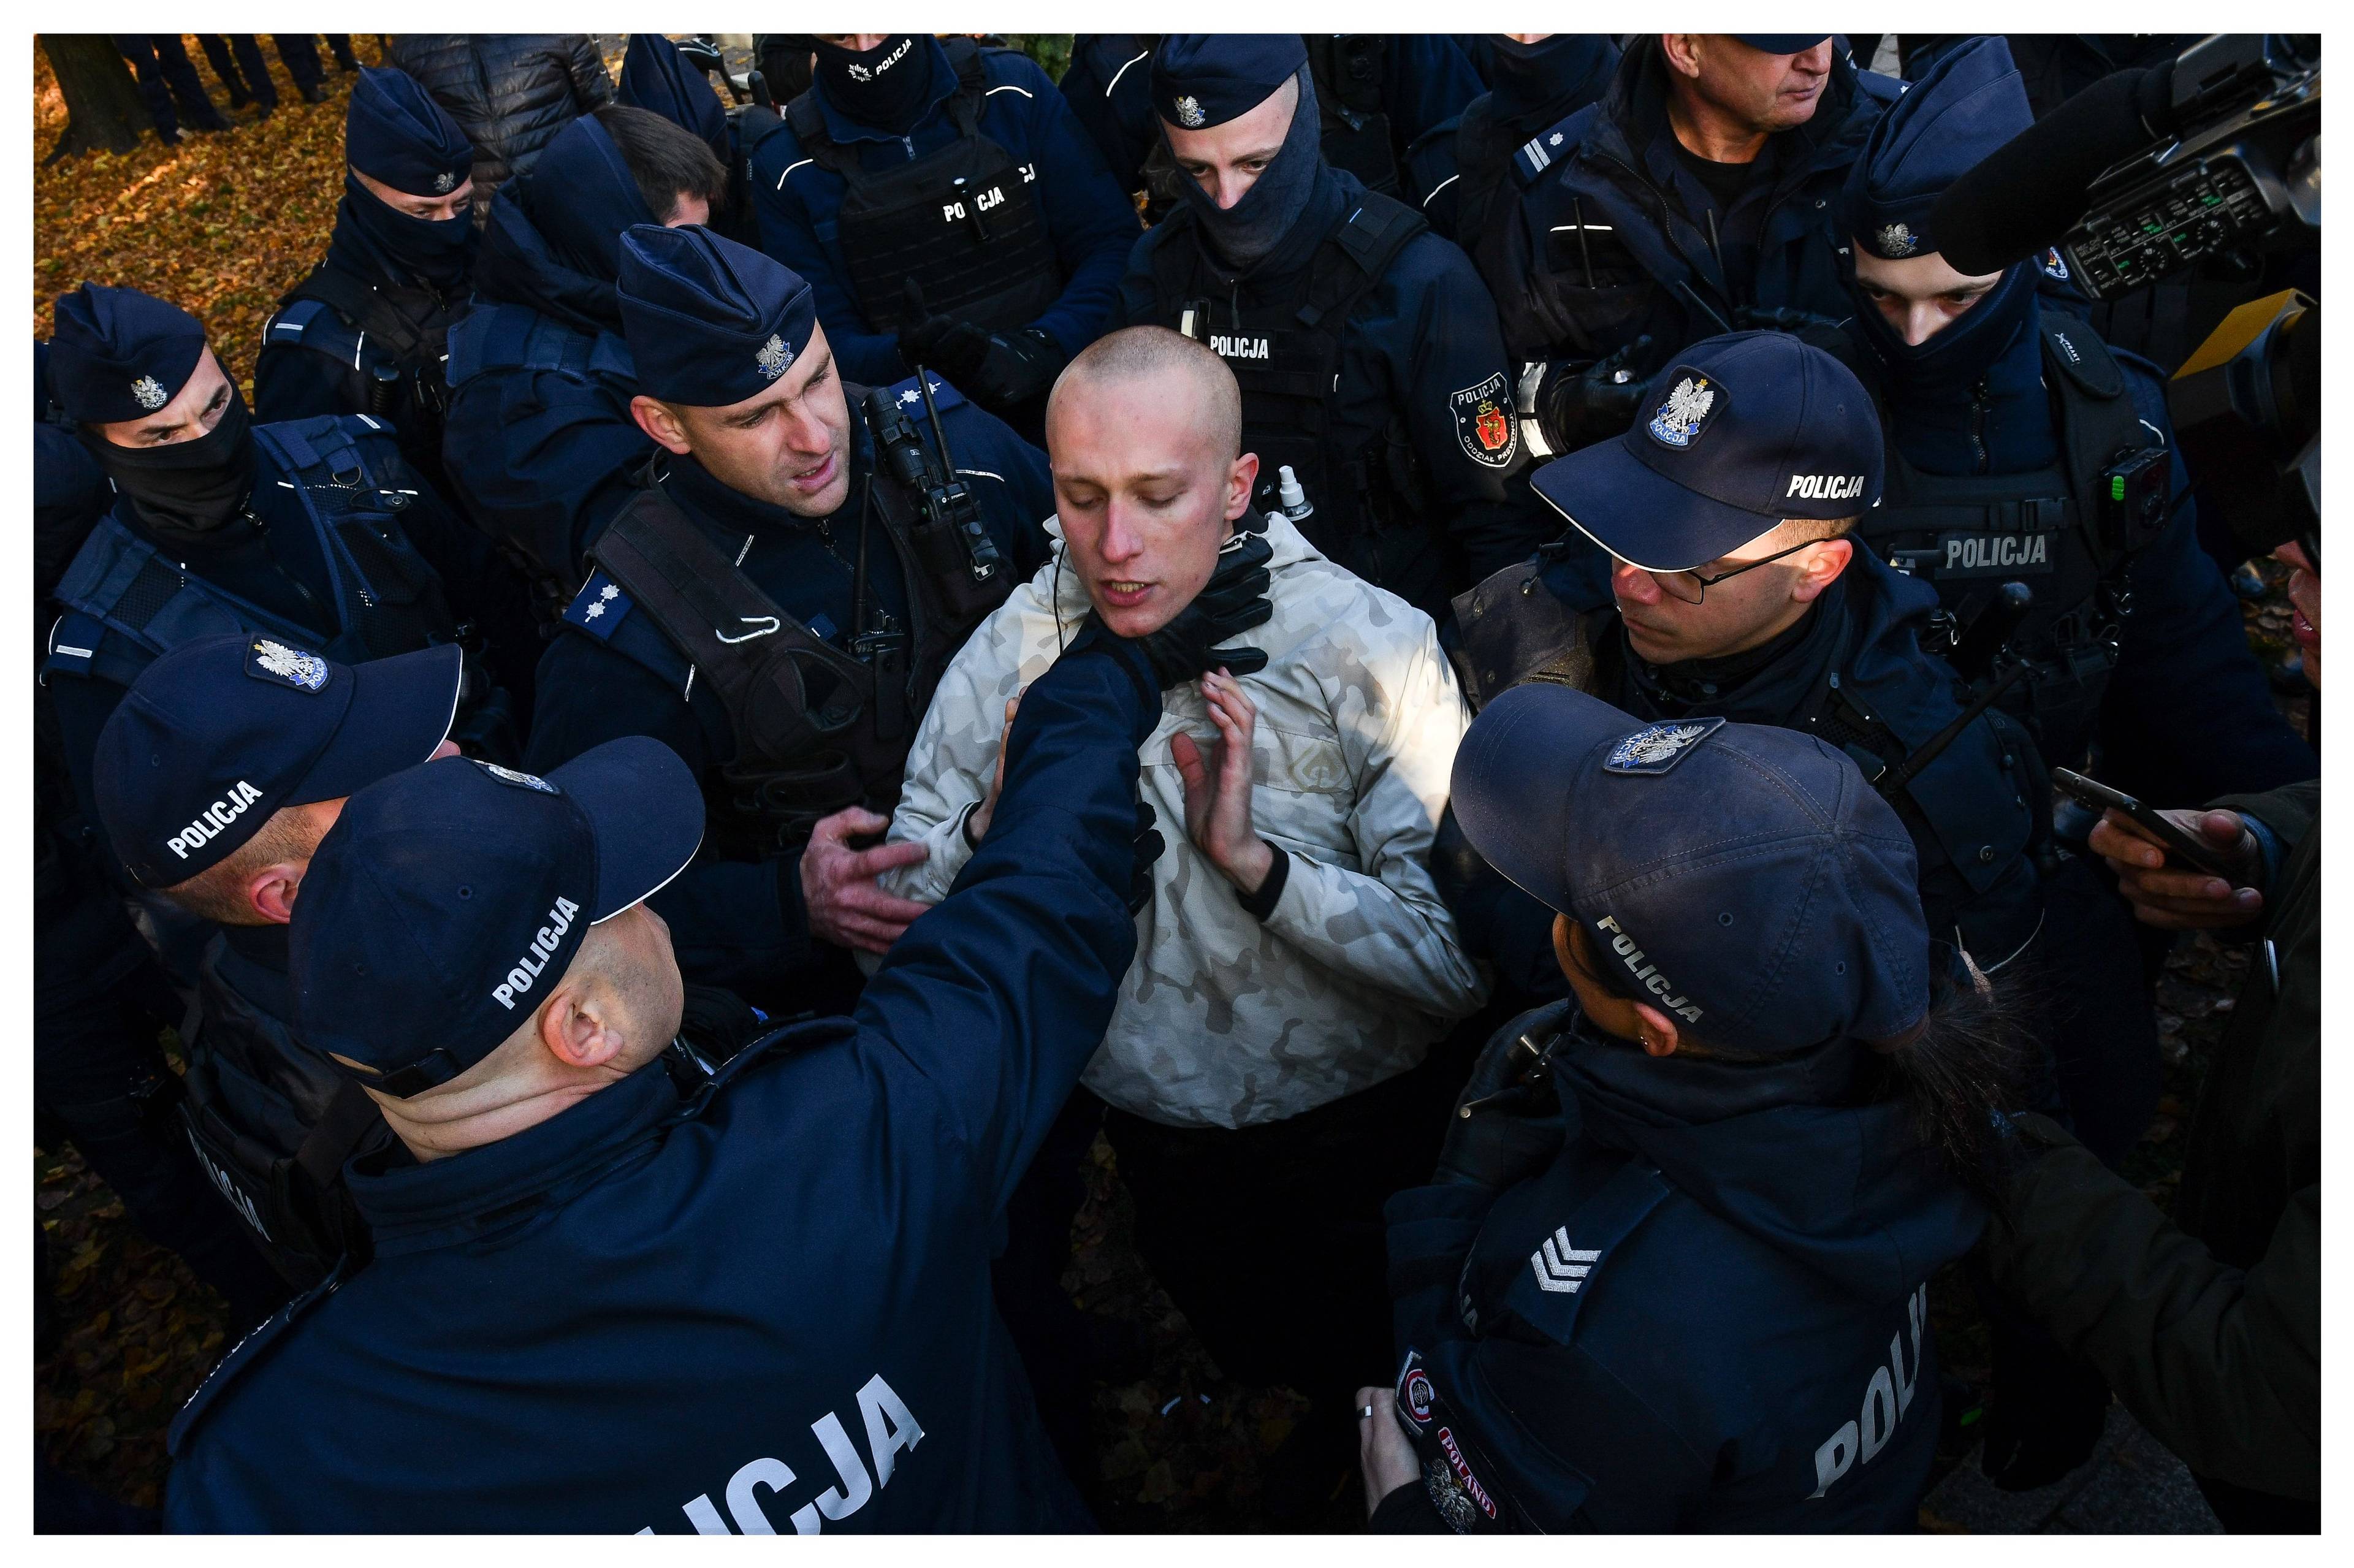 Policjant chwyta za gardło protestującego, otoczonego przez innych policjantów. Policyjna przemoc